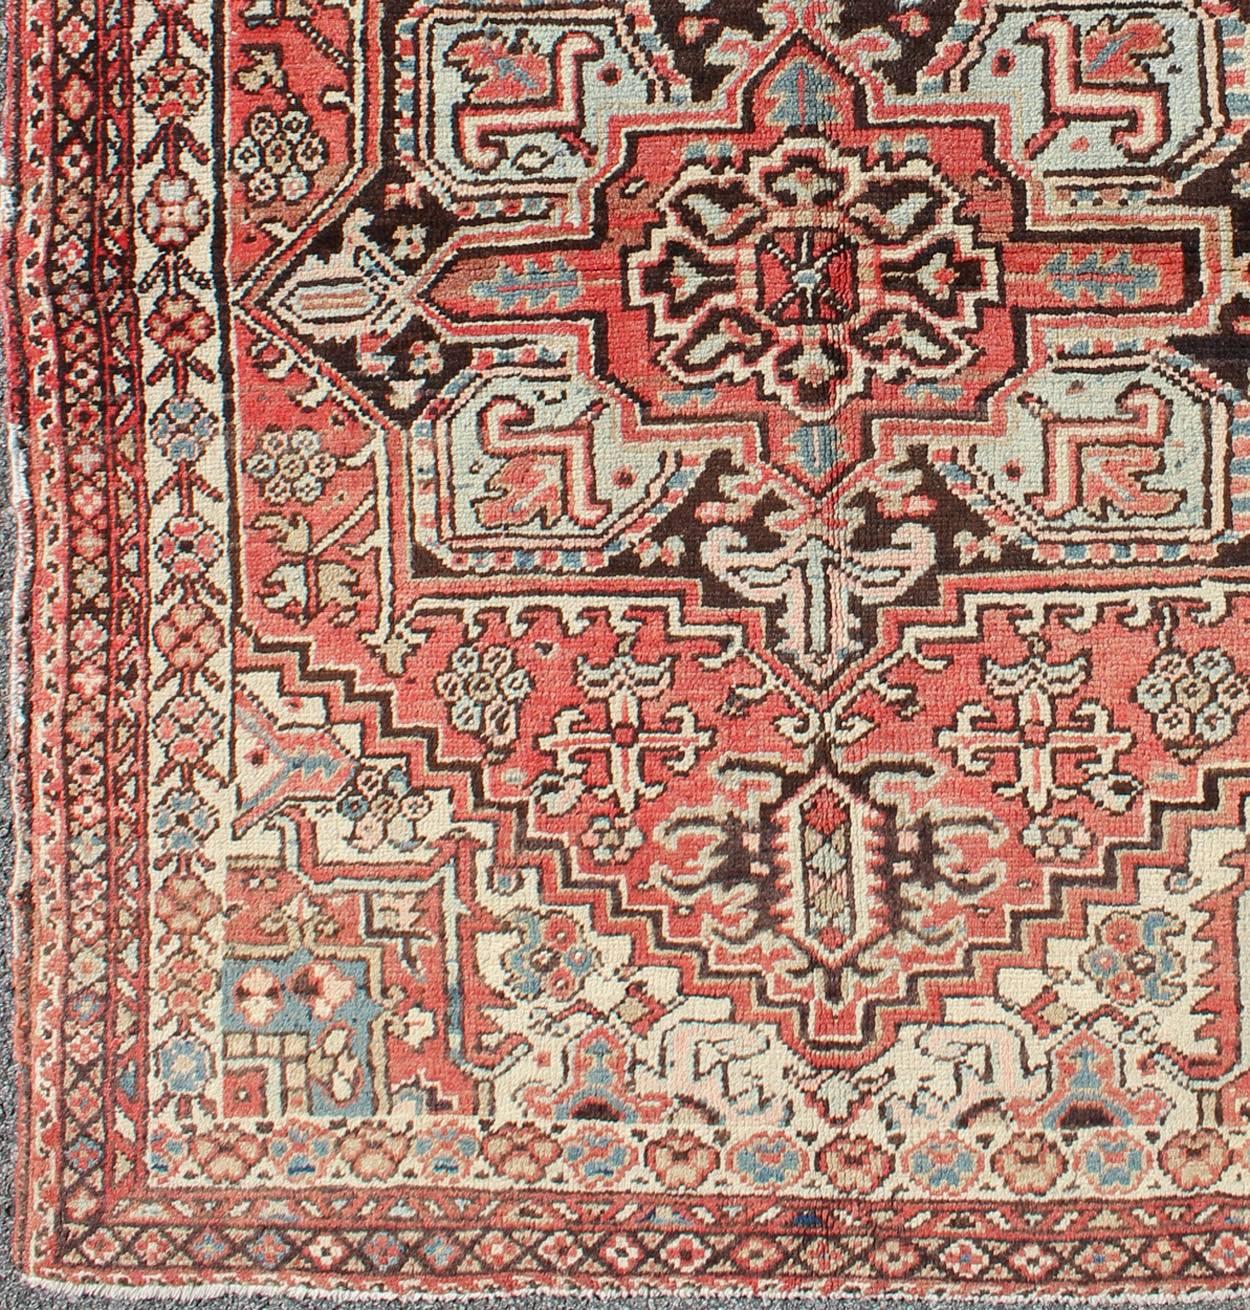 Geometrisch stilisierter antiker persischer Heriz-Teppich mit Medaillon, um 1930, Teppich dsp-ca16194, Herkunftsland / Typ: Iran / Heriz Serapi, um 1930.

Dieser quadratische, antike persische Heriz-Teppich aus dem zweiten Viertel des 20.